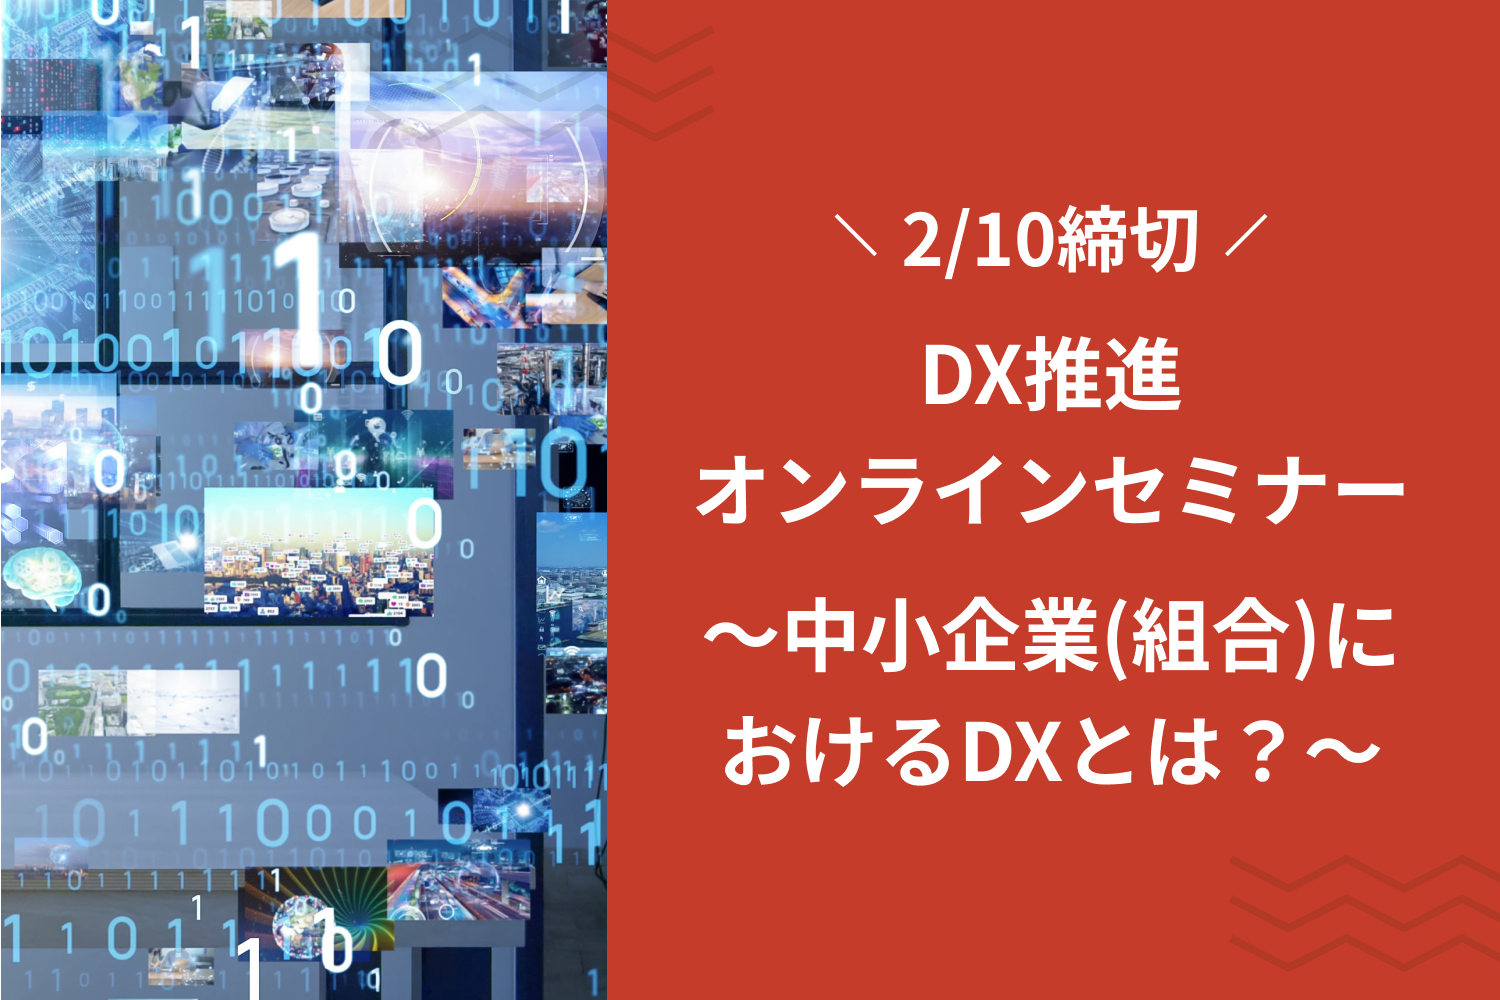 DX推進オンラインセミナー